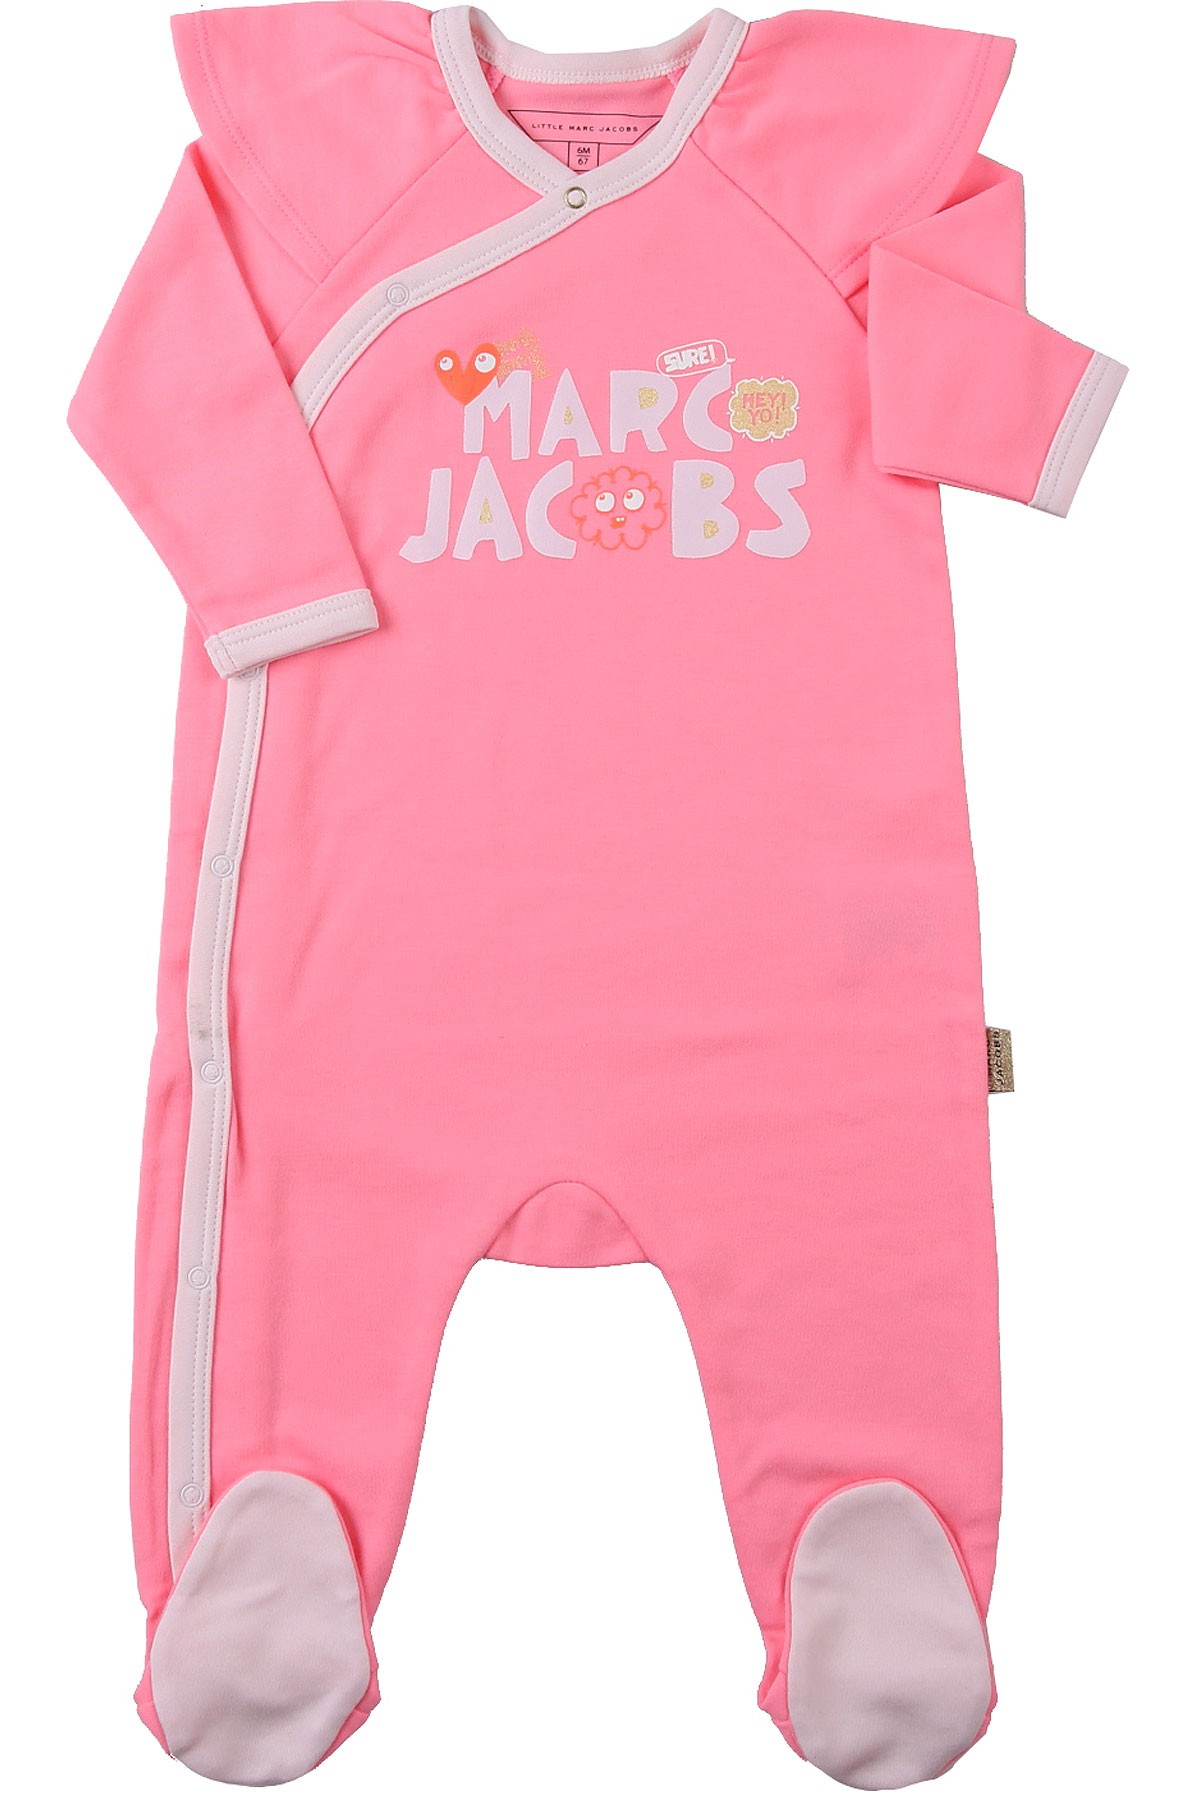 Marc Jacobs Baby Body & Strampelanzug für Mädchen Günstig im Sale, Fluo Pink, Polyester, 2017, 1M 6M